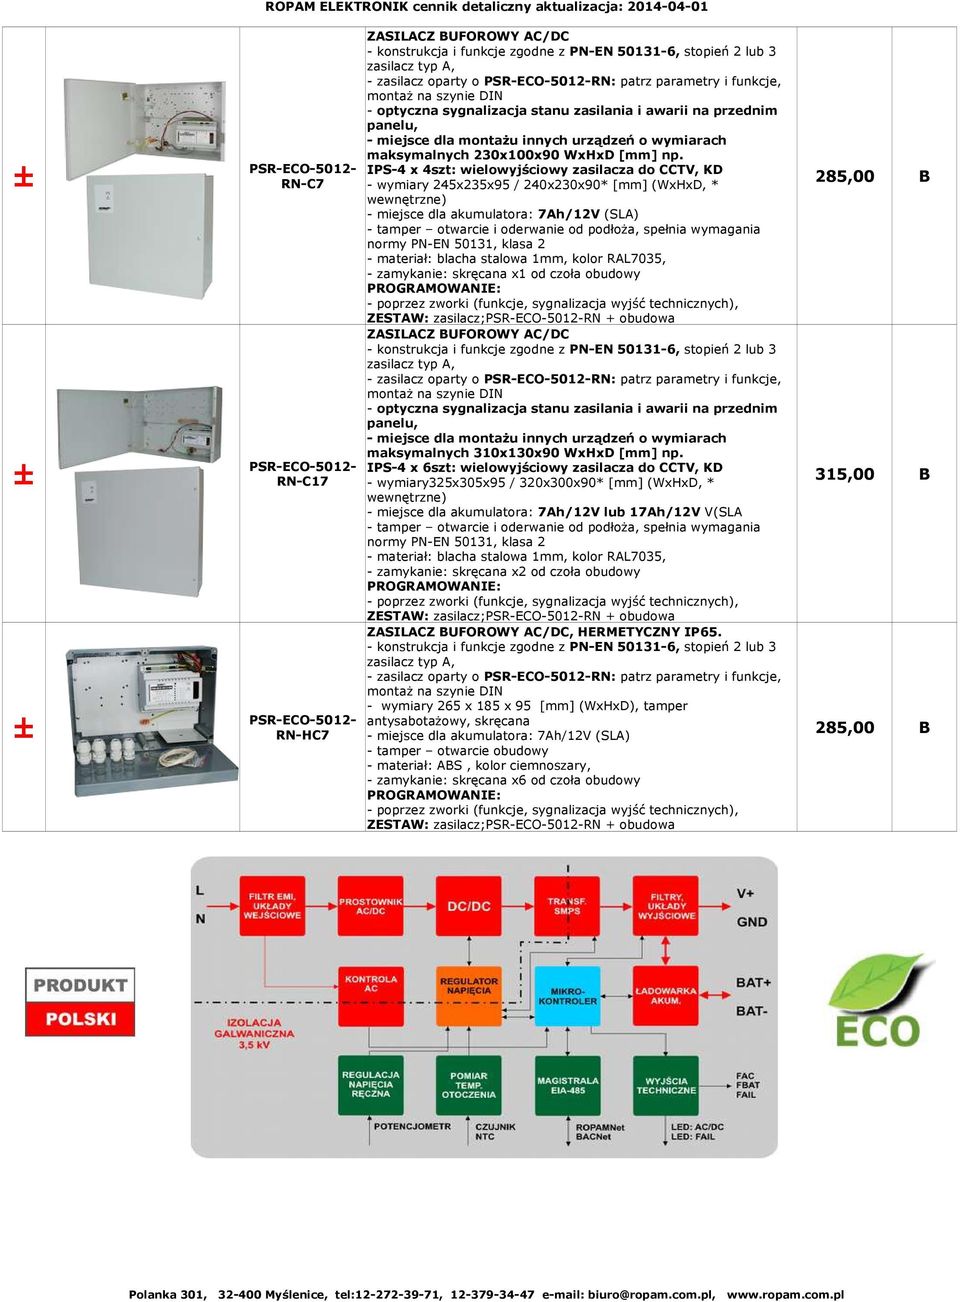 PSR-ECO-5012- IPS-4 x 4szt: wielowyjściowy zasilacza do CCTV, KD 285,00 B RN-C7 - wymiary 245x235x95 / 240x230x90* [mm] (WxHxD, * wewnętrzne) - miejsce dla akumulatora: 7Ah/12V (SLA) - tamper